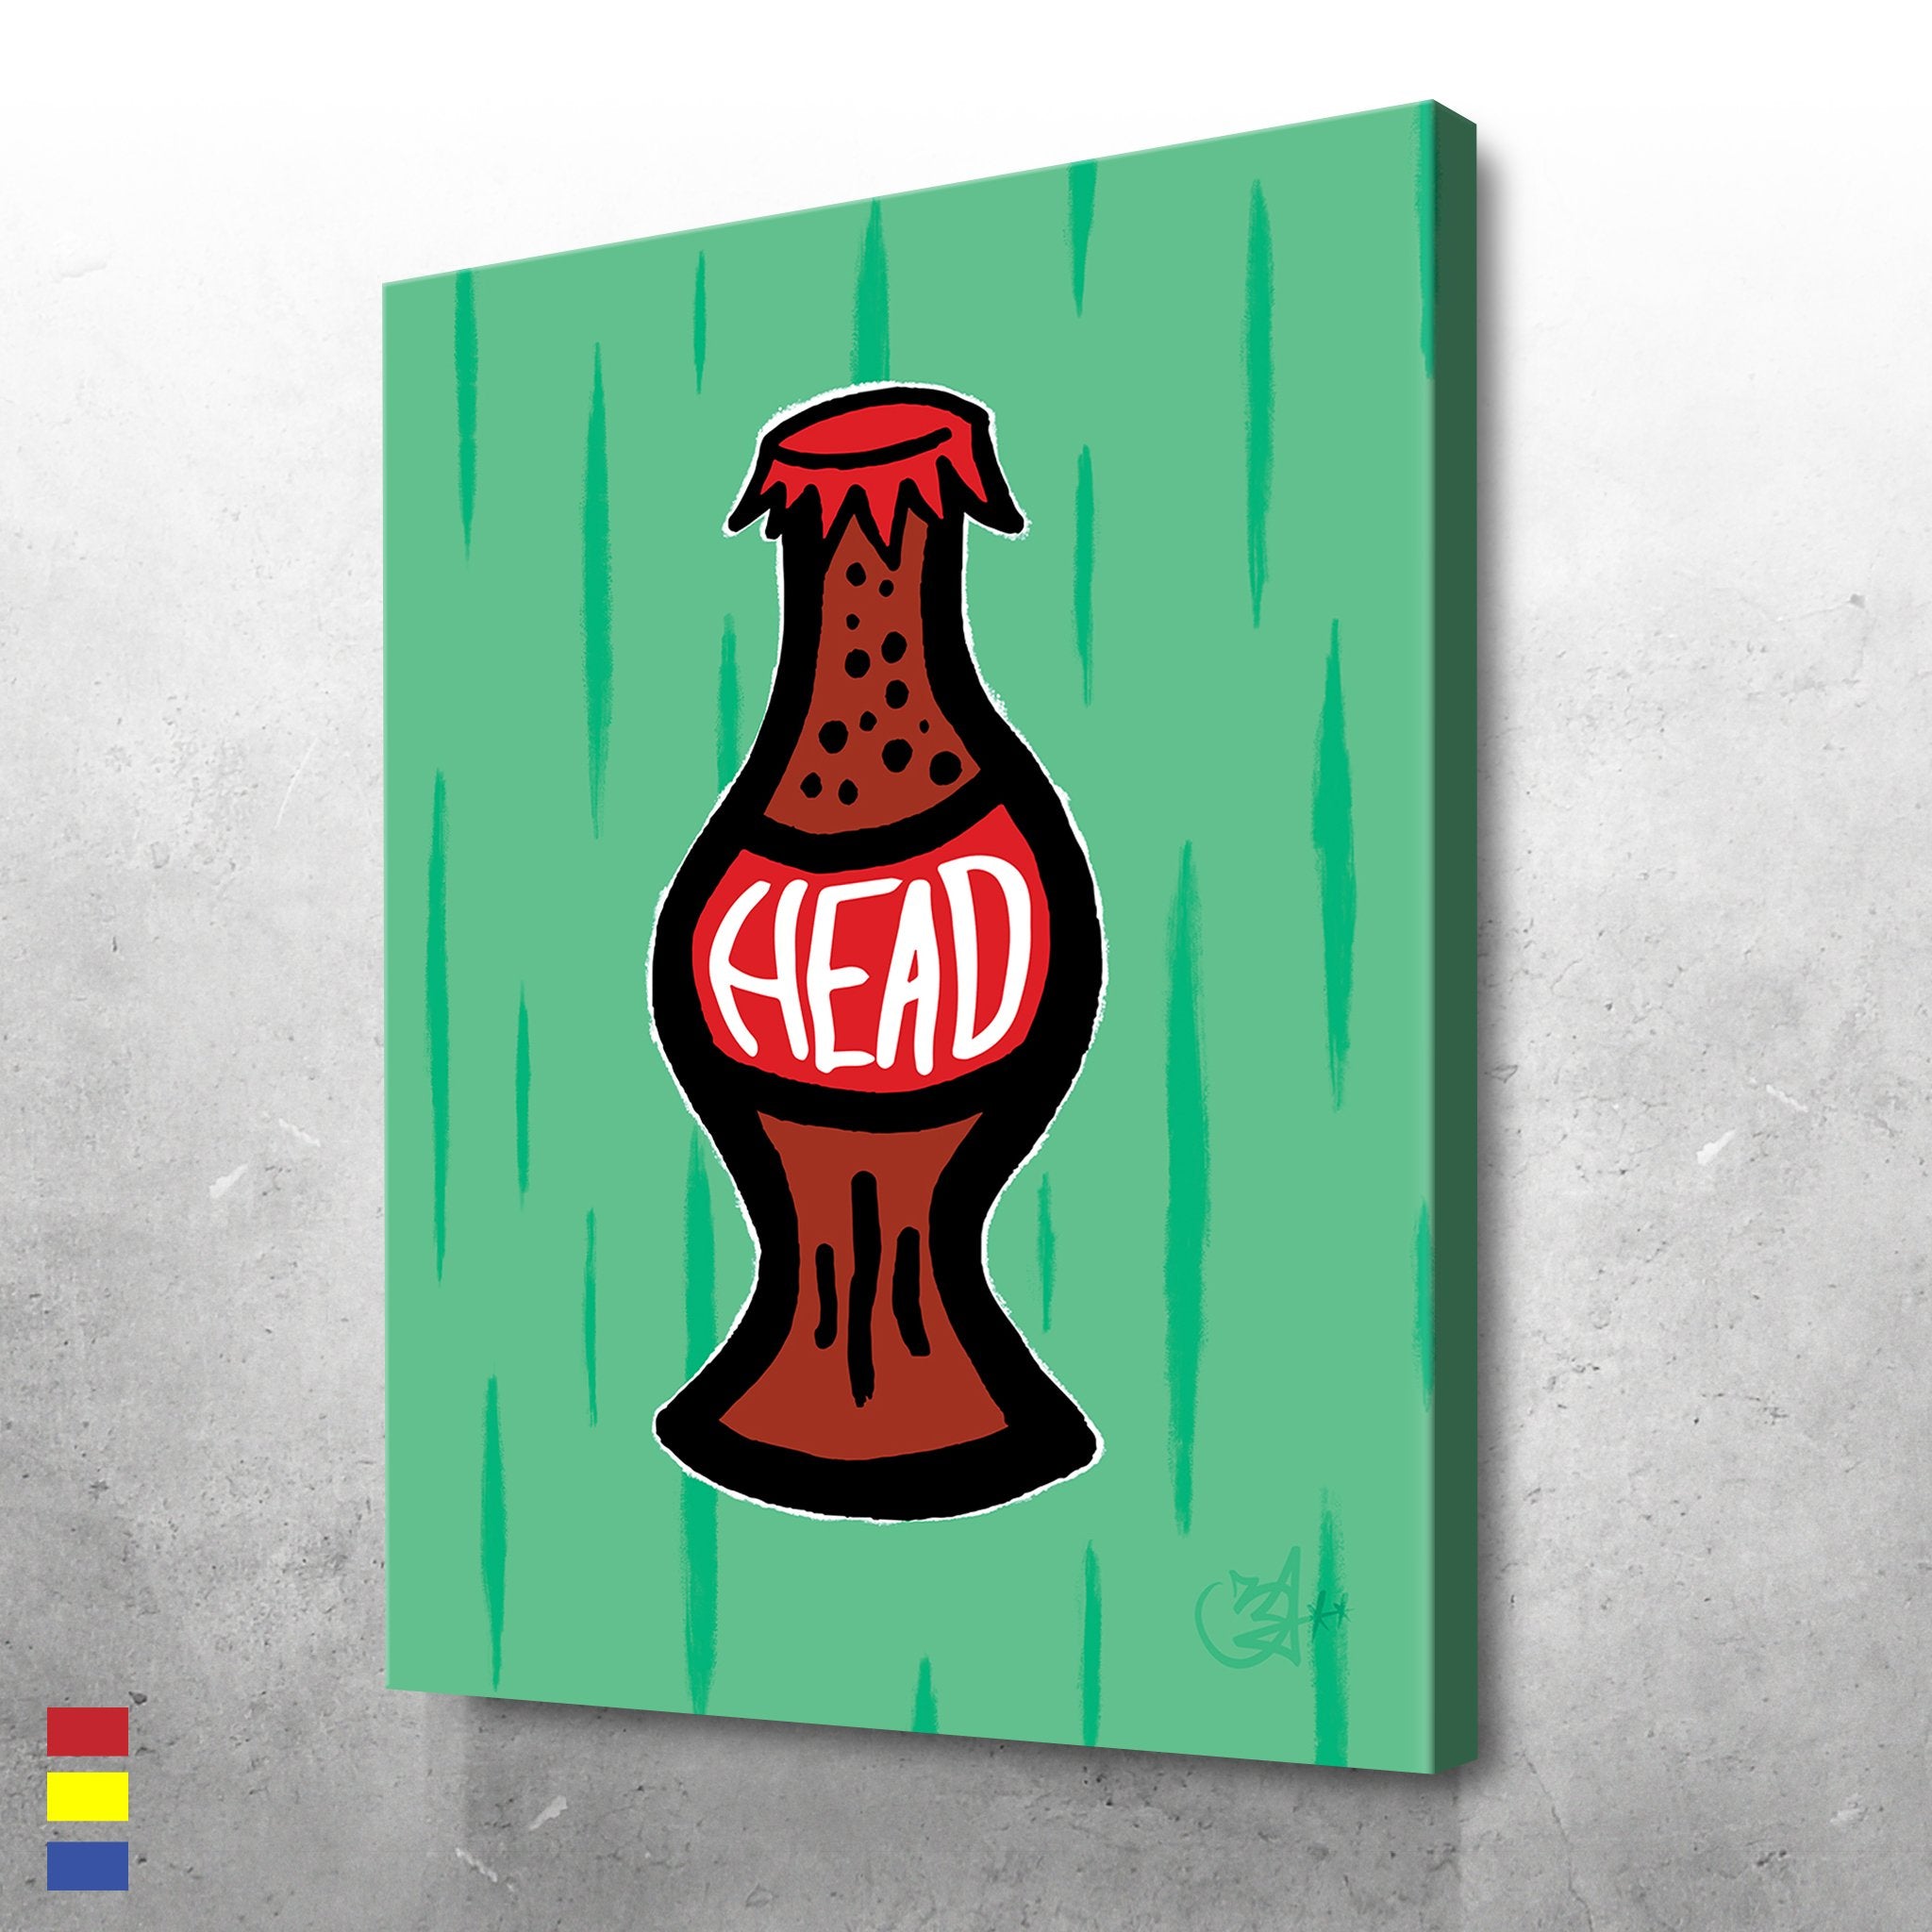 Coke Head